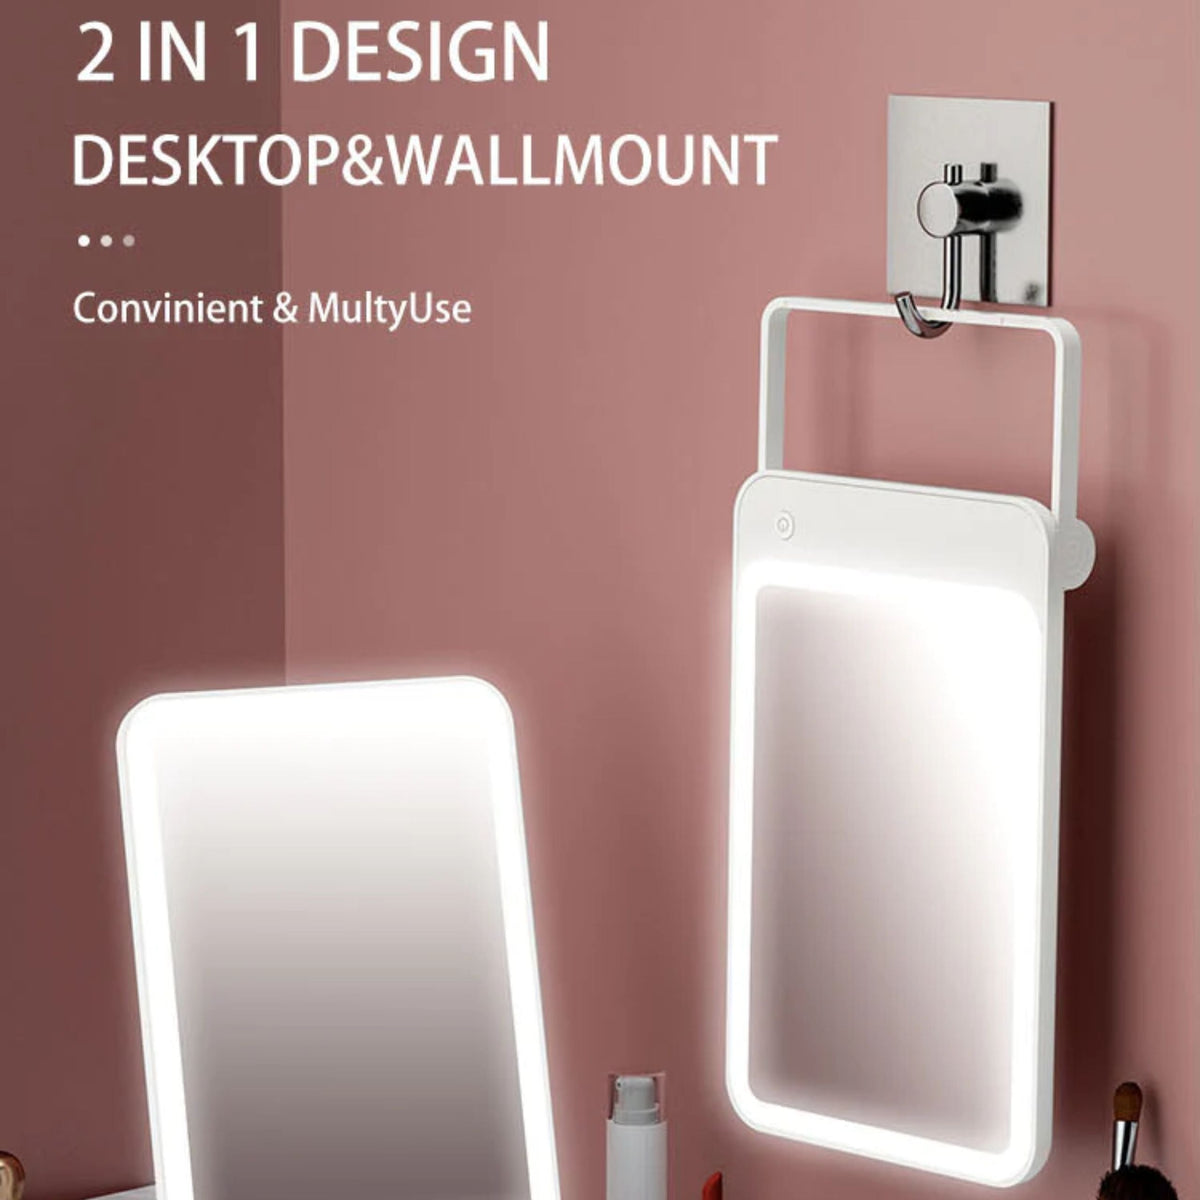 Bomidi R1 Make Up LED Light Mirror - White